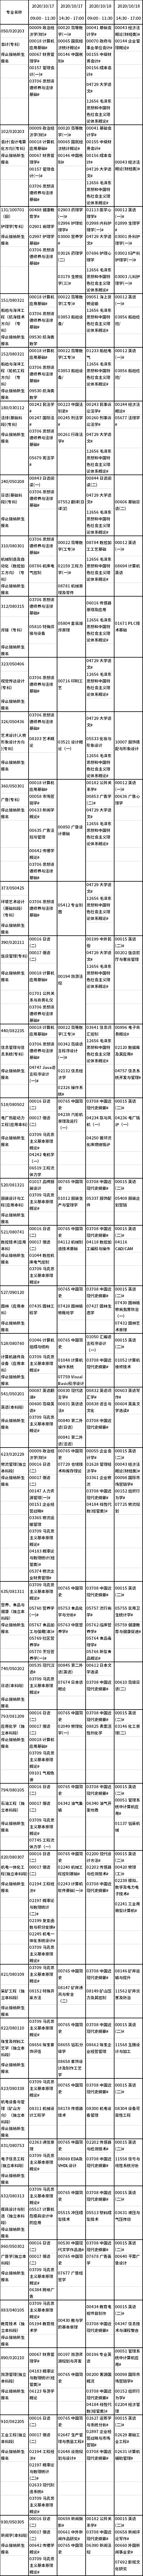 2020年10月辽宁自考停考课程安排表